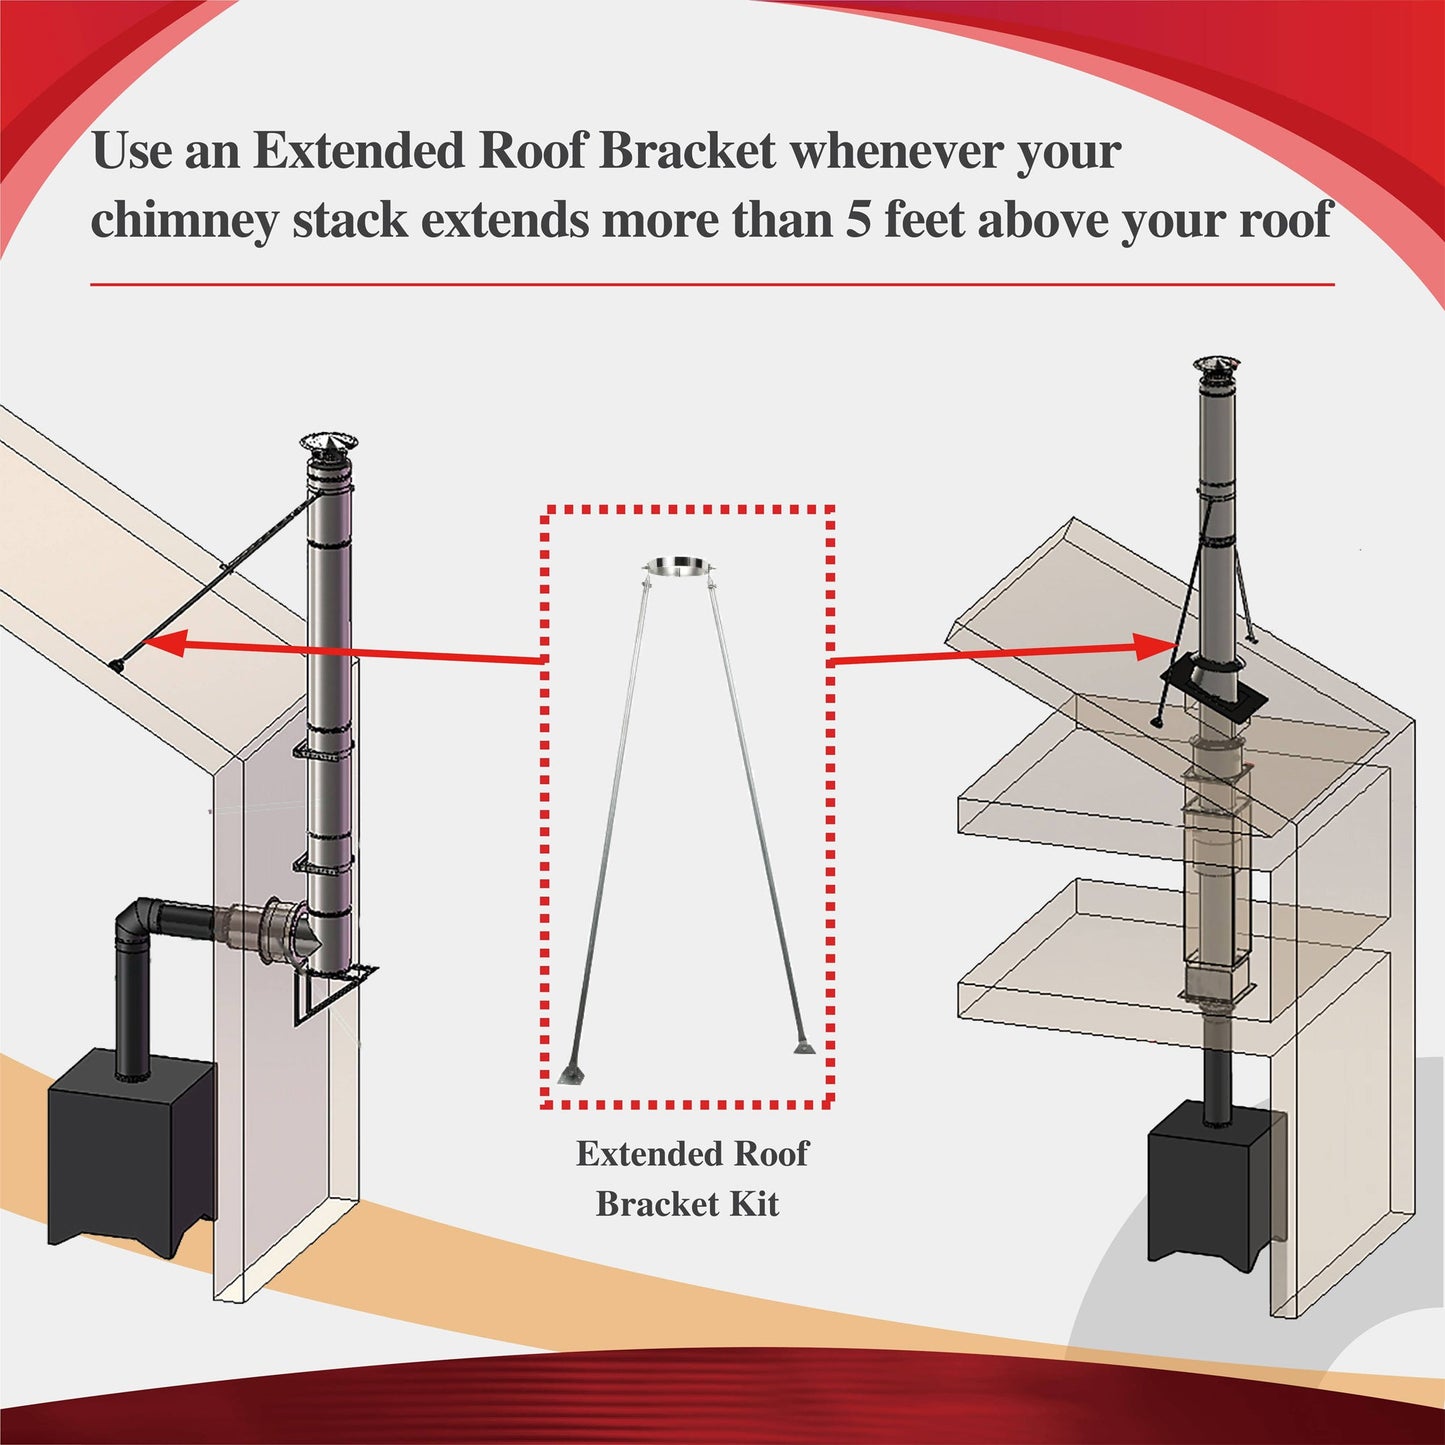 Extended Roof Brace for 6" Inner Diameter Chimney Pipe